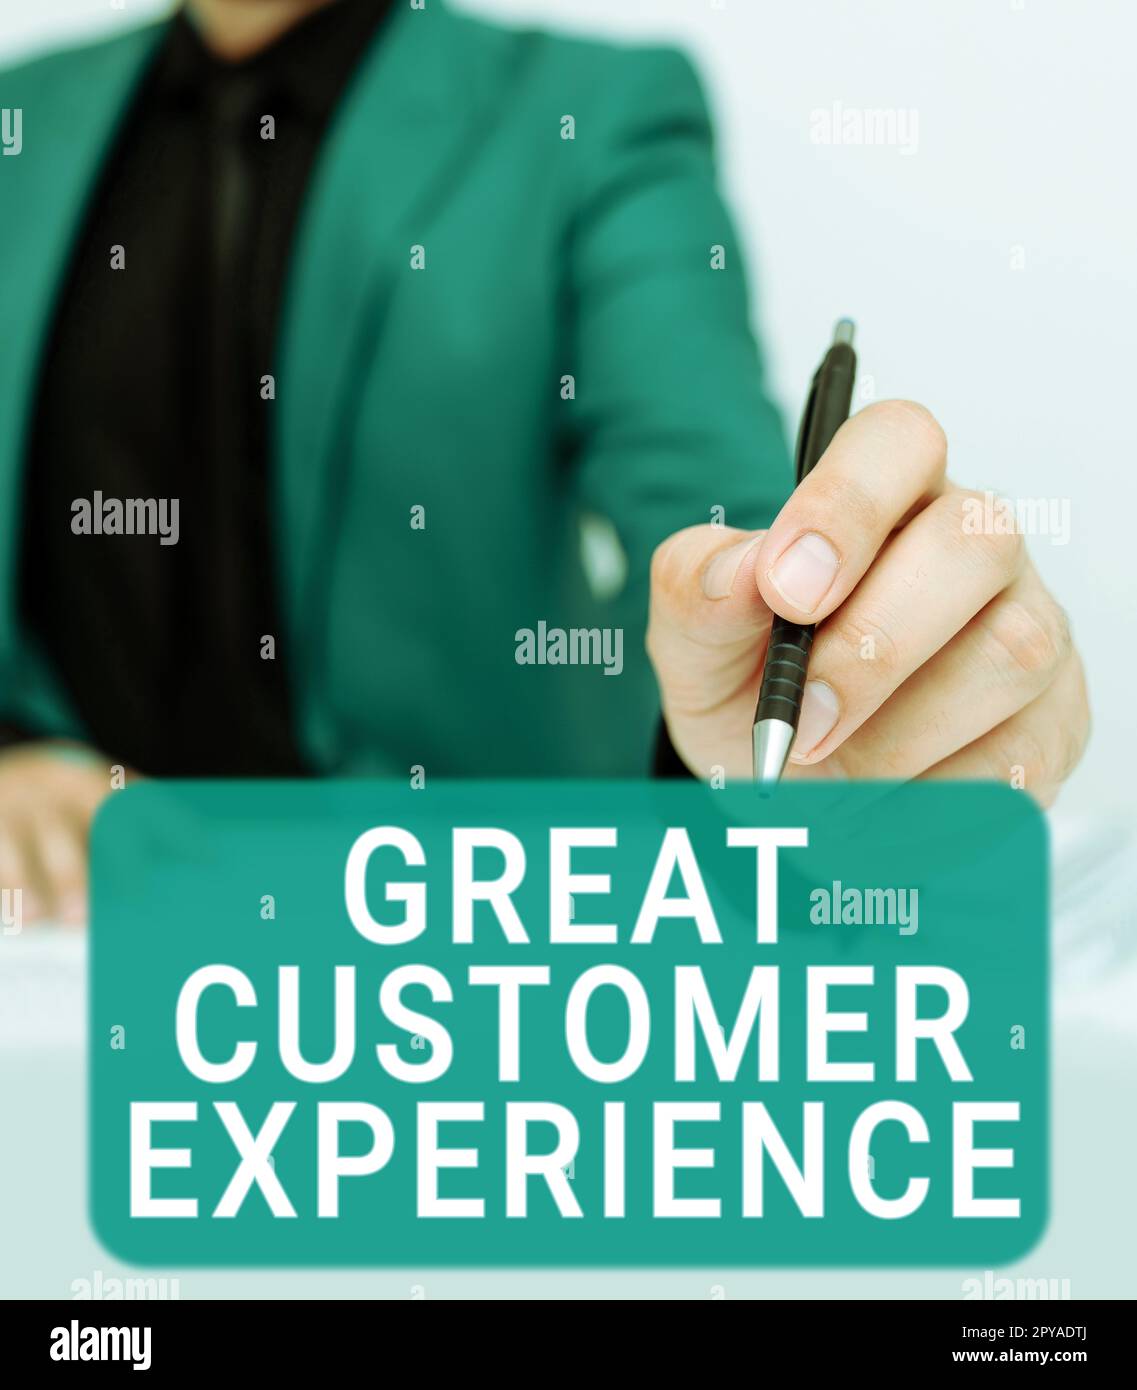 Textunterschrift für herausragende Kundenerfahrungen. Ein Wort für eine freundliche und hilfsbereite Reaktion auf Kunden Stockfoto